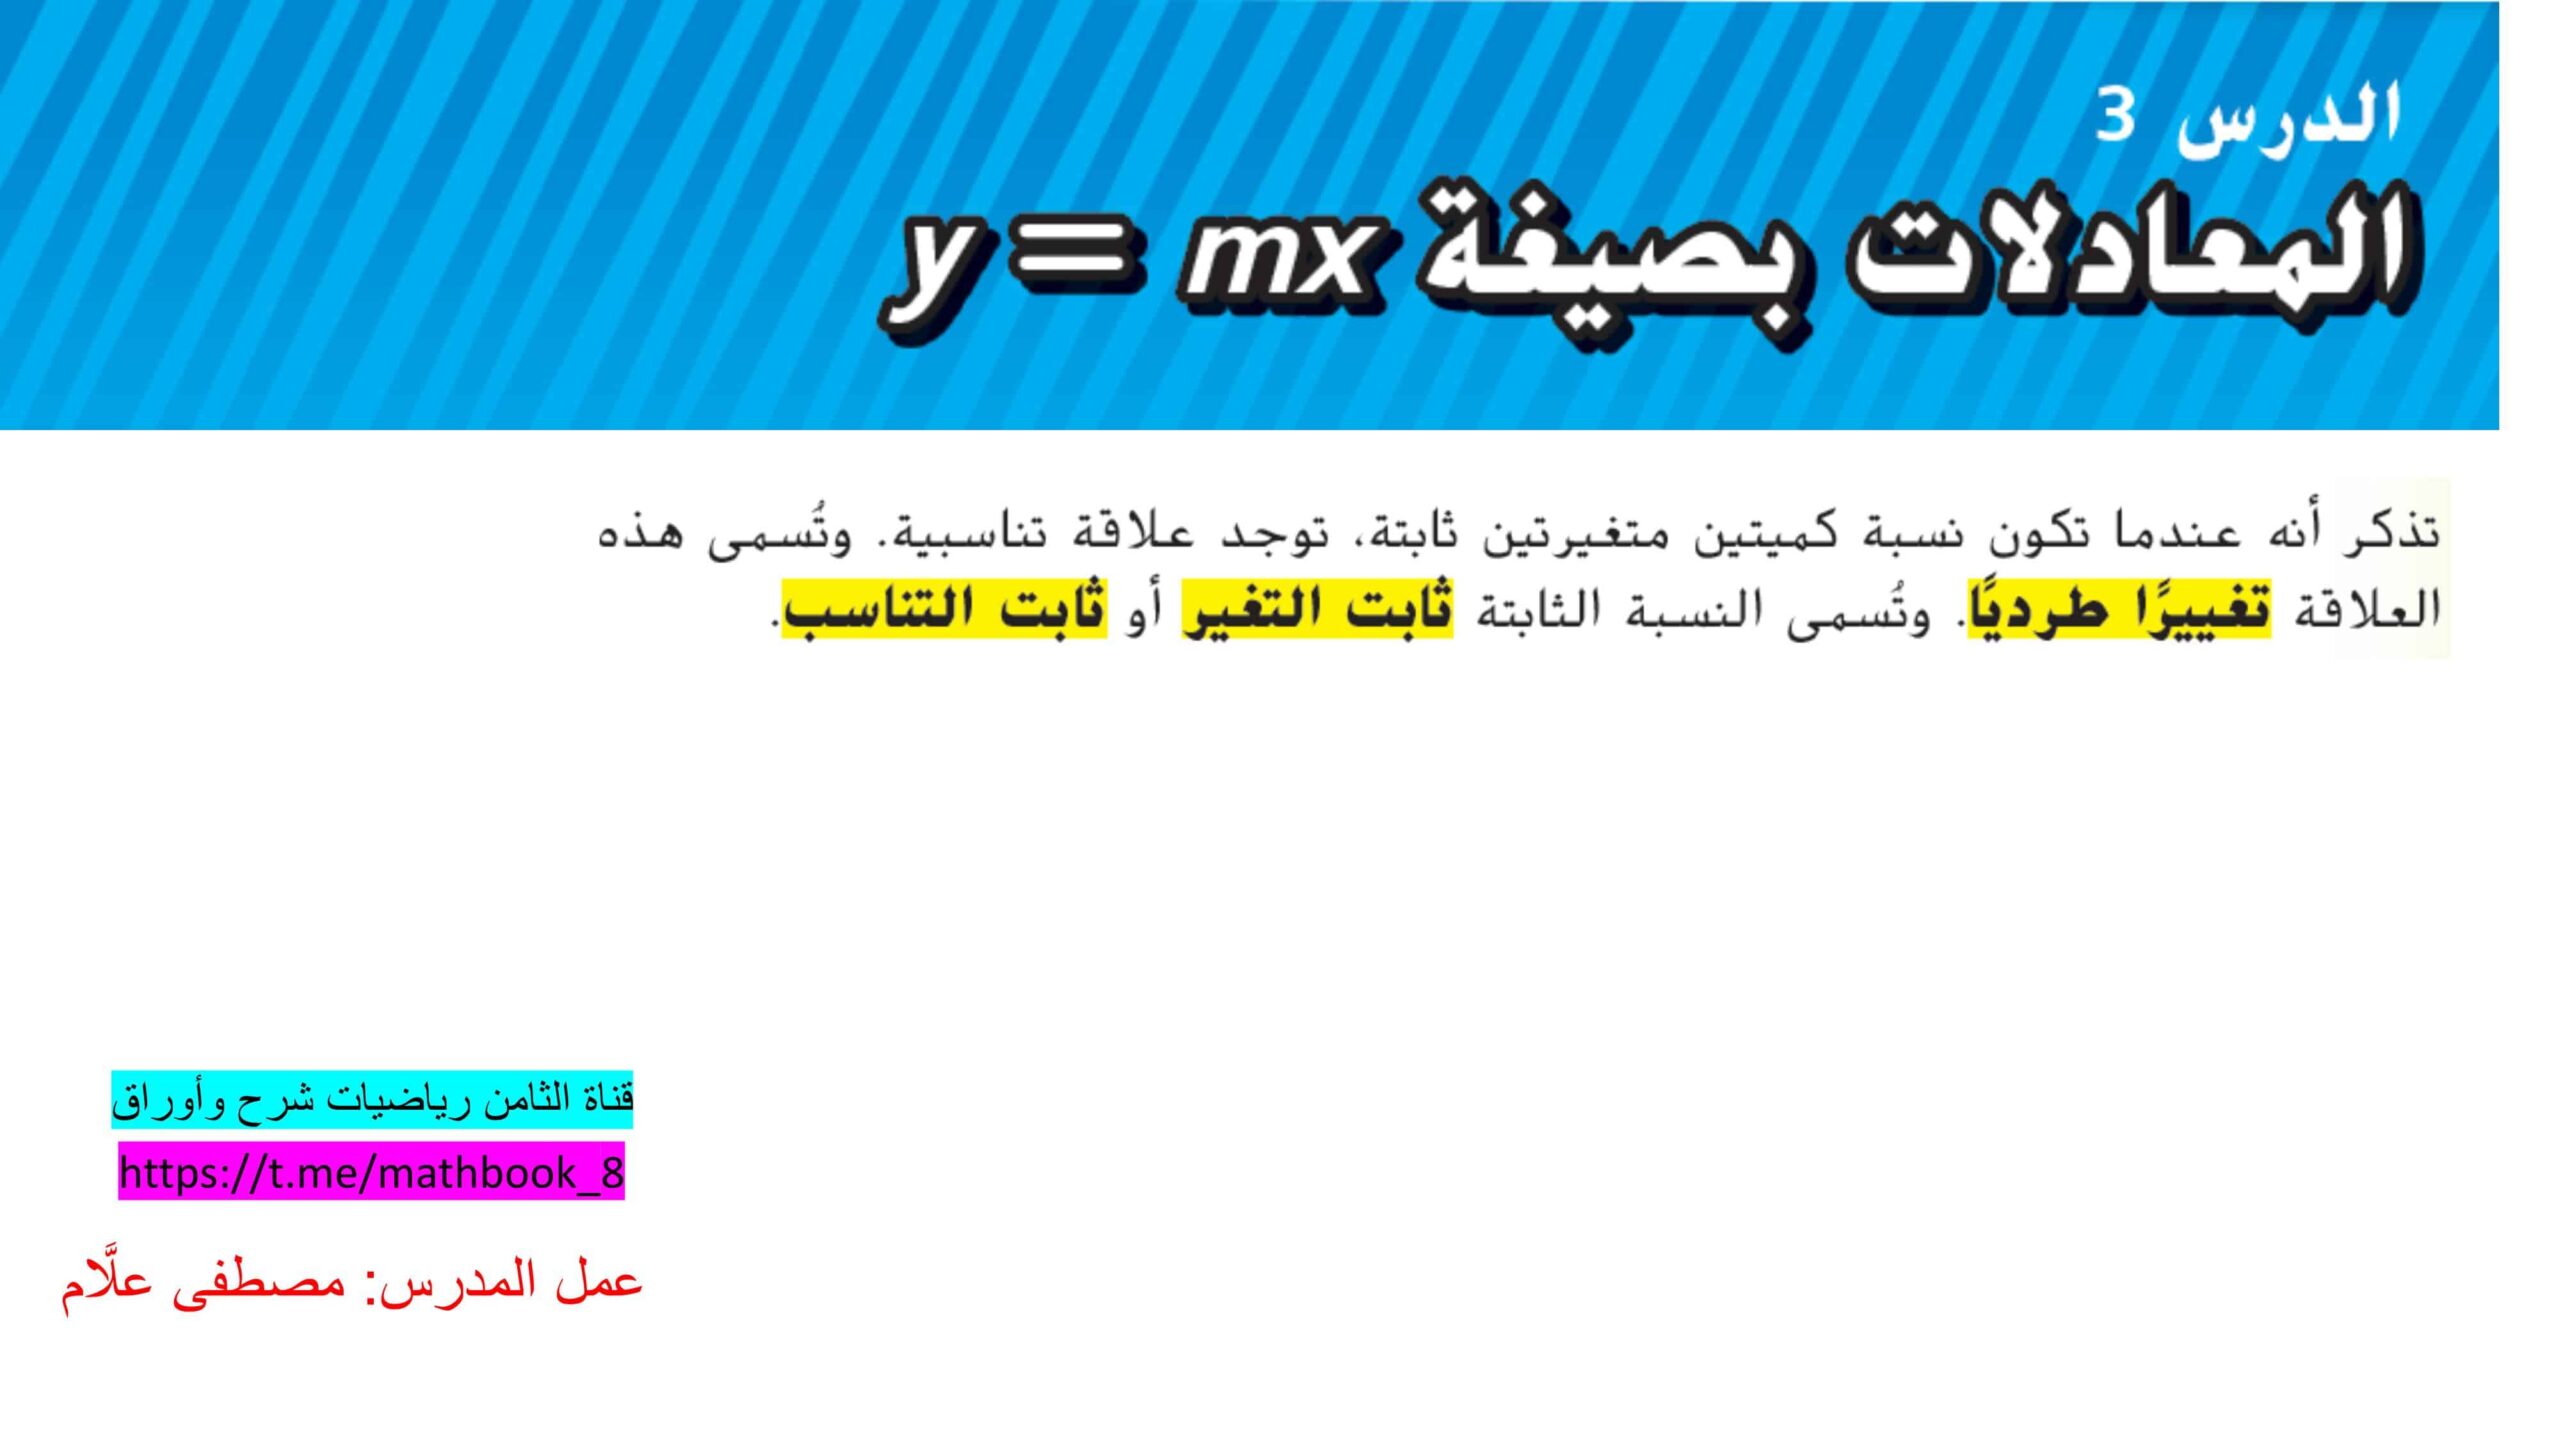 حل درس المعادلات بصيغة y=mx الرياضيات المتكاملة الصف الثامن